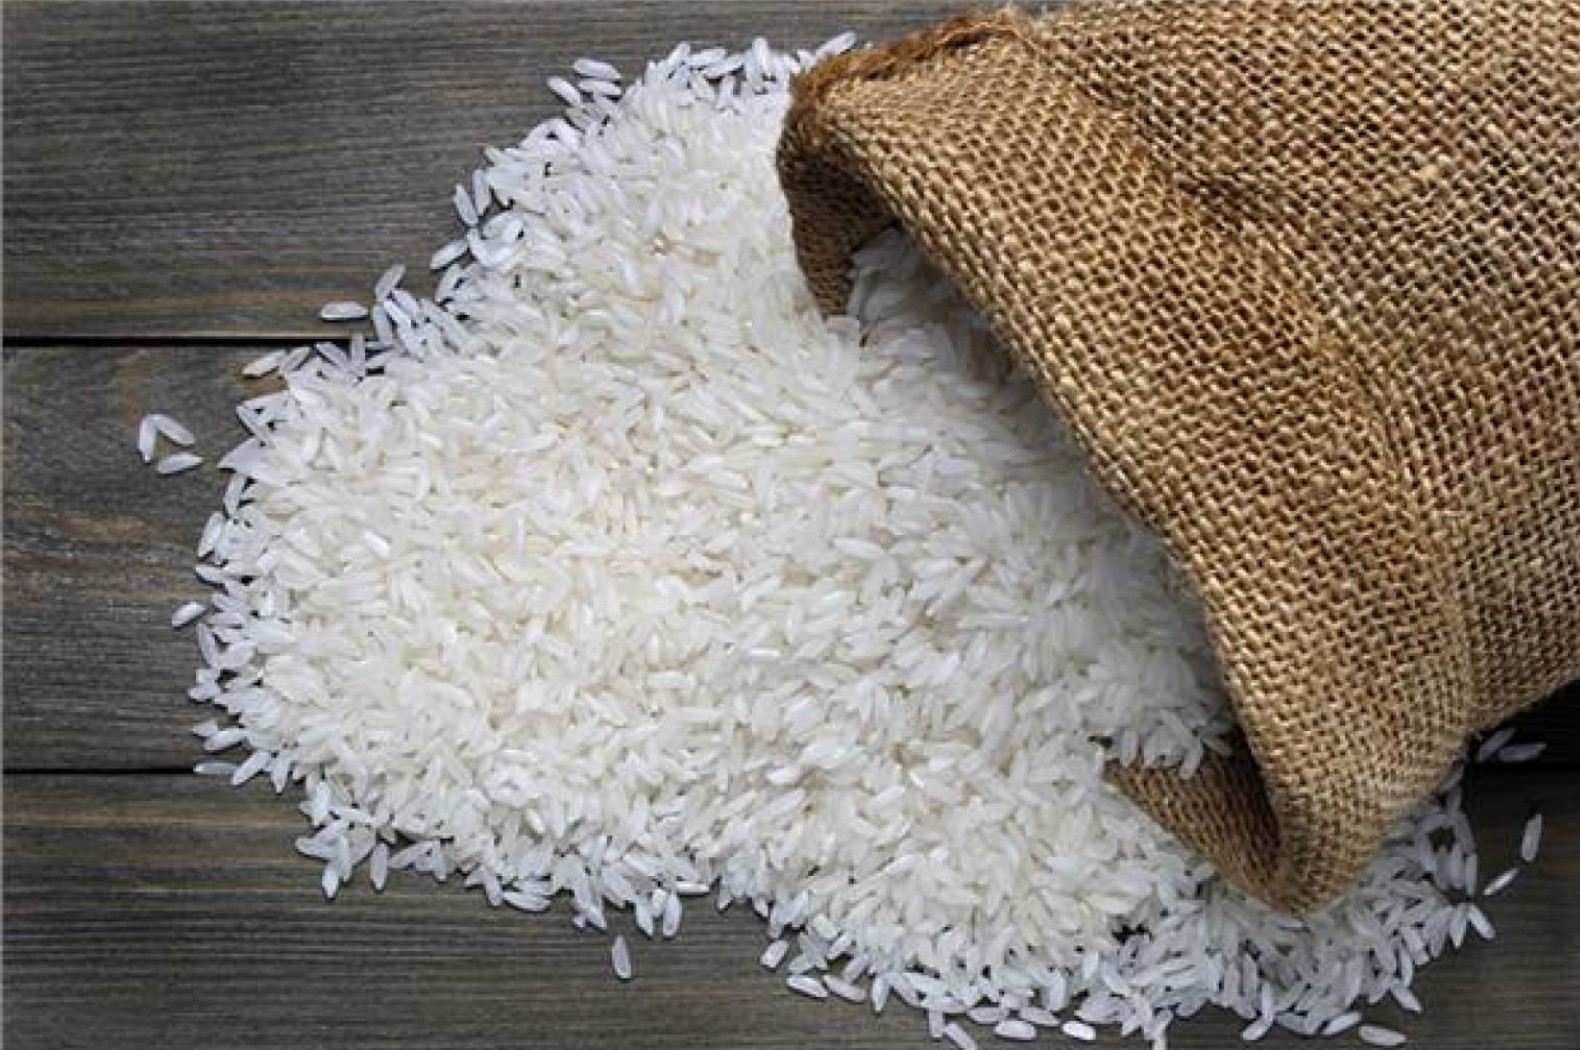 مجلس الوزراء المصري اعتبر في قرار رسمي الأرز من المحاصيل الاستراتيجية